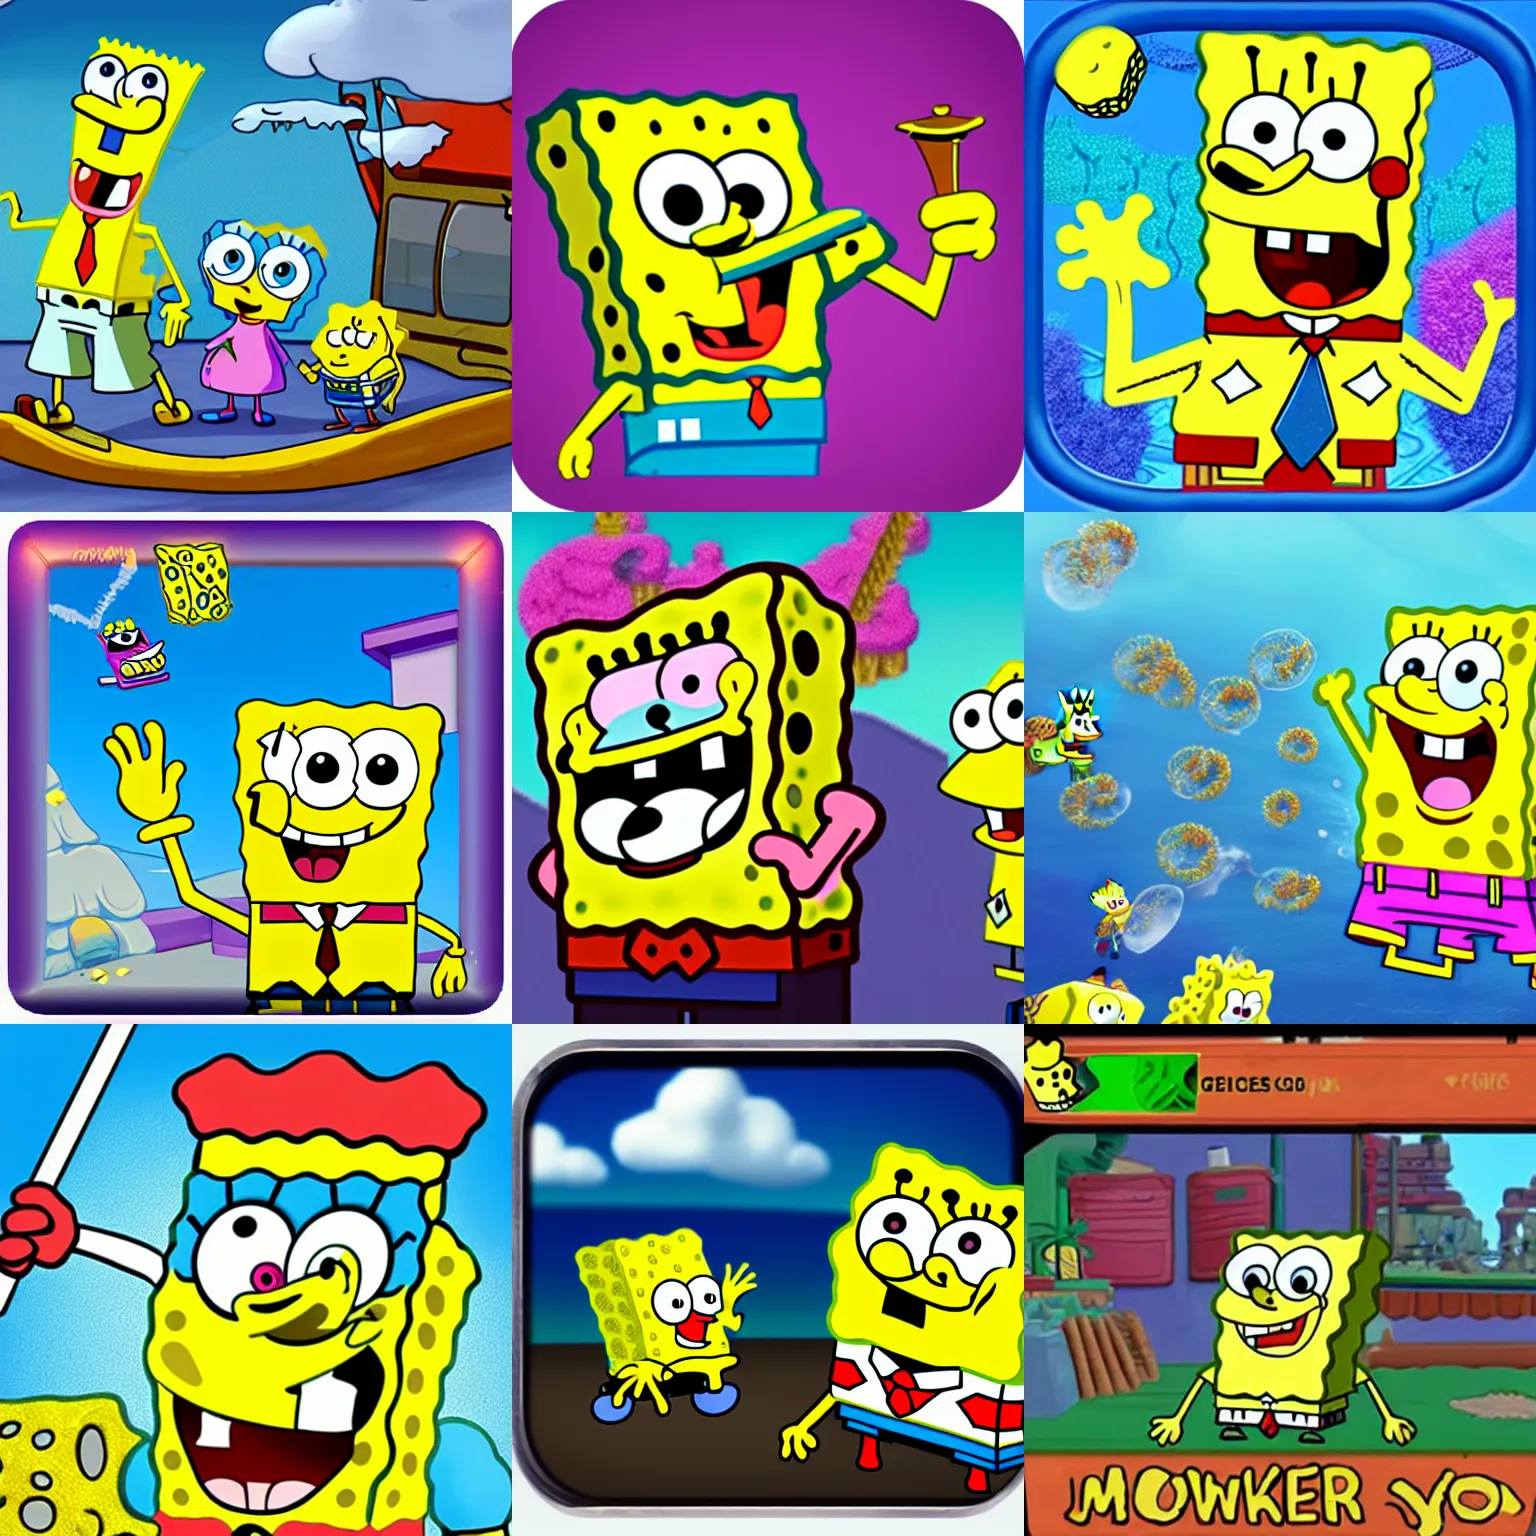 Prompt: spongebob, game maker